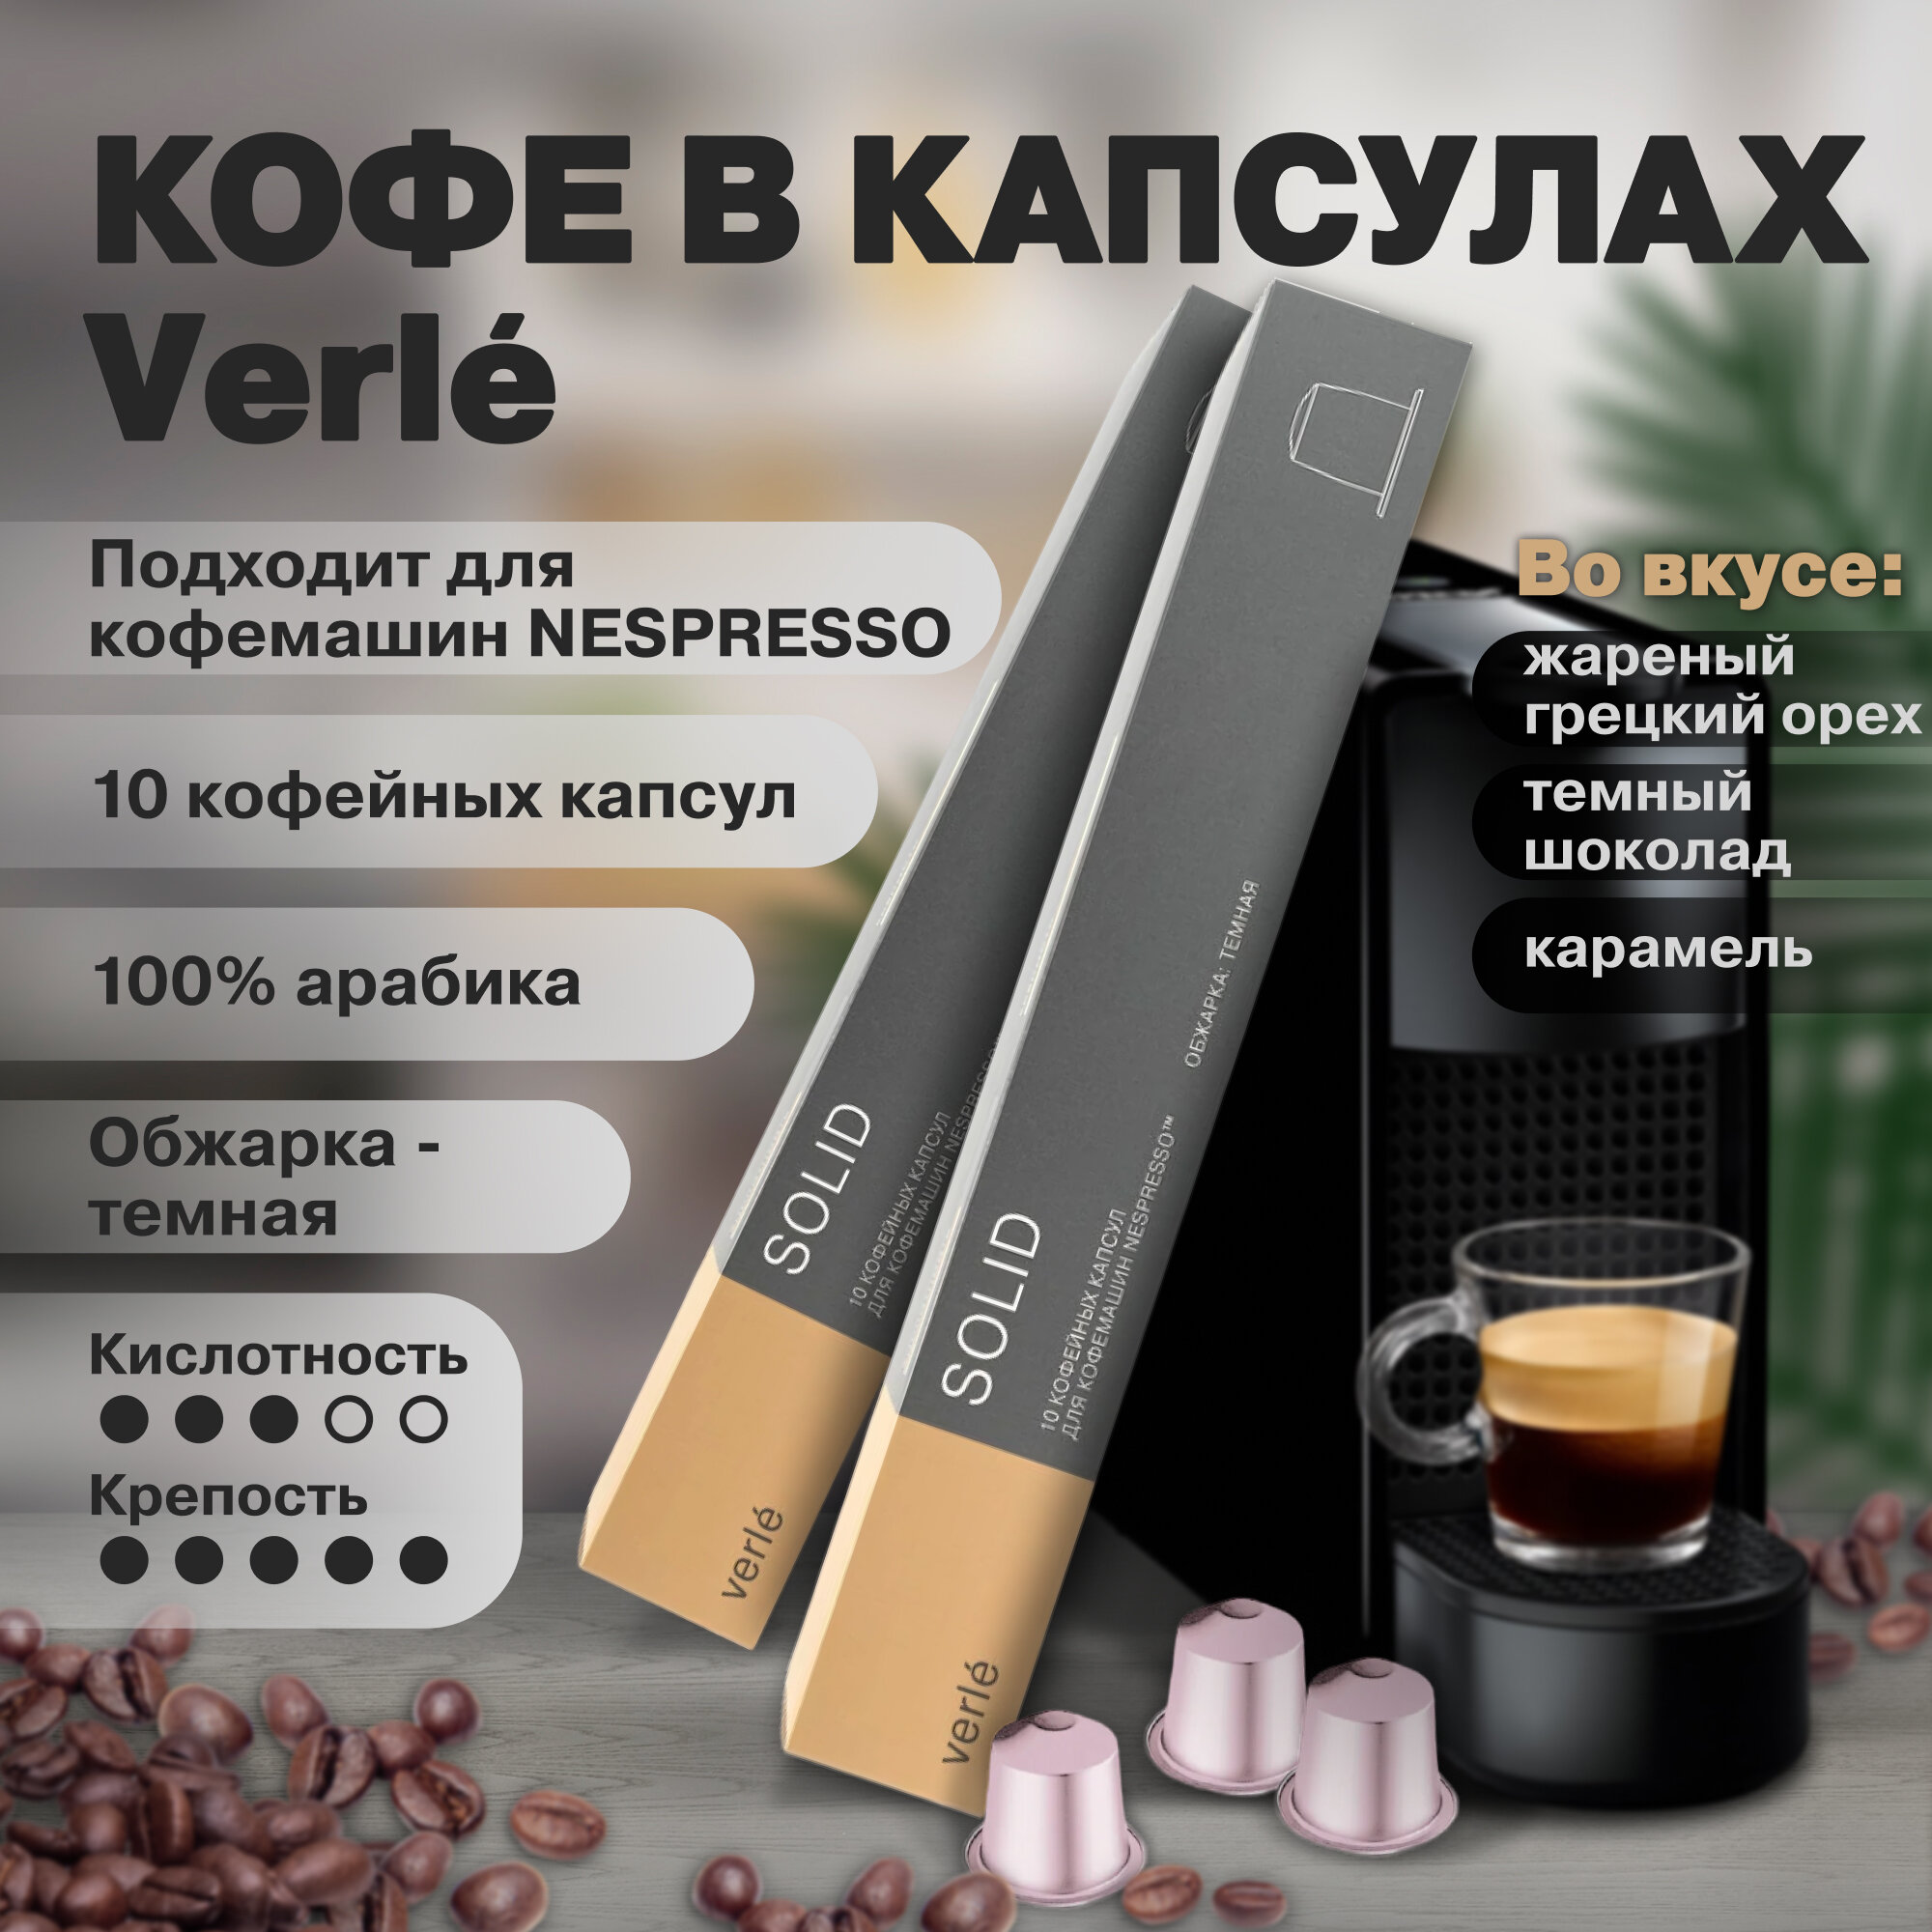 Кофе молотый в капсулах Verle SOLID (VCR), Арабика 100%, 3 пачки по 10 капсул